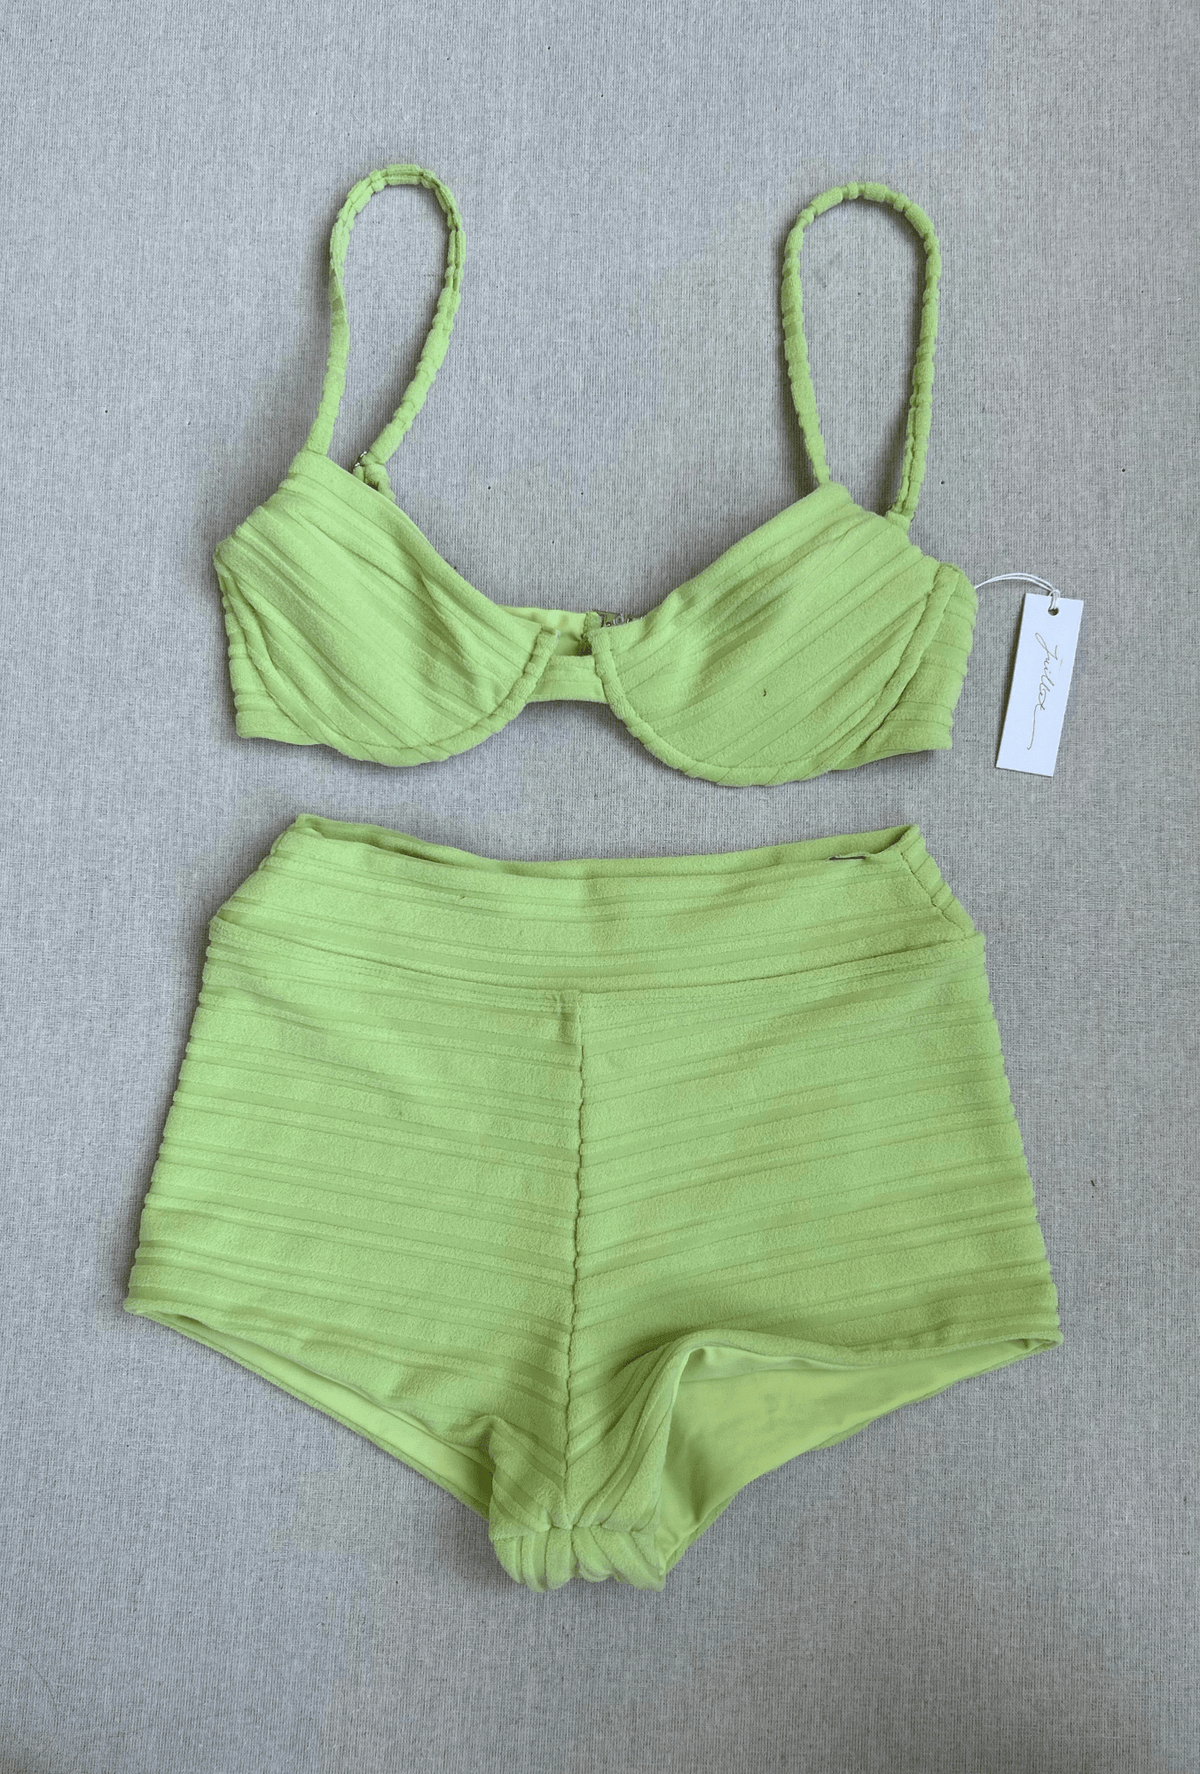 lulu top / sutton short in light green texture - size xs